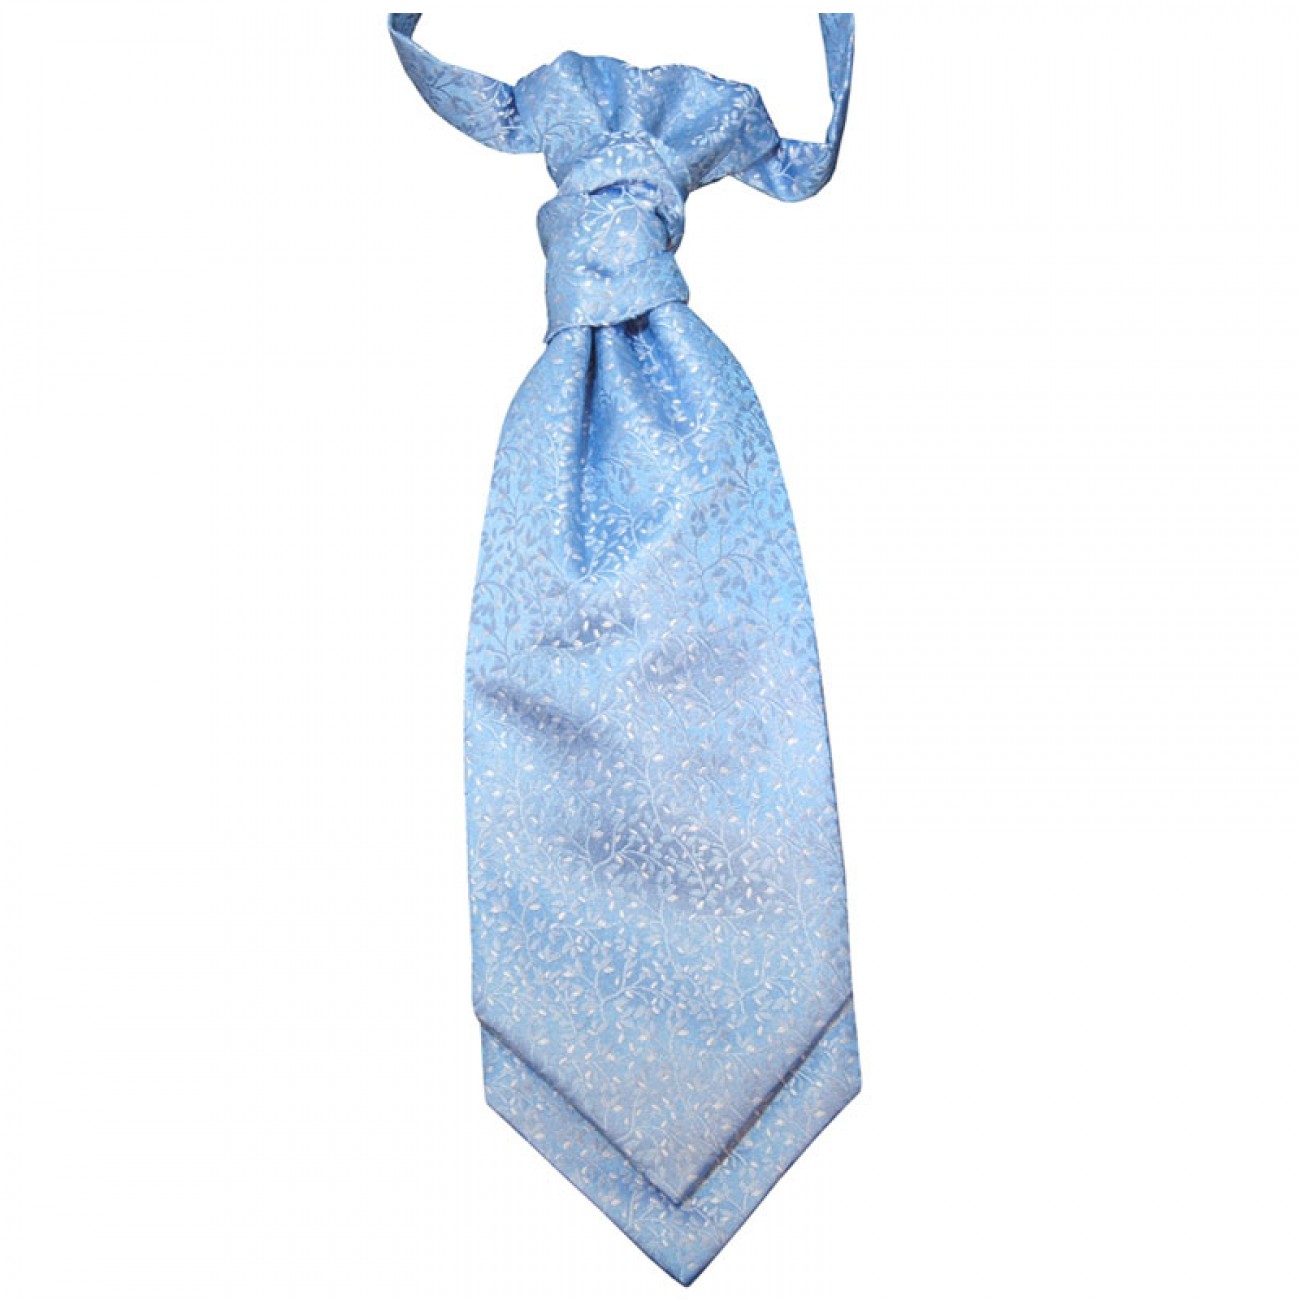 Ascot tie - cravat light blue floral